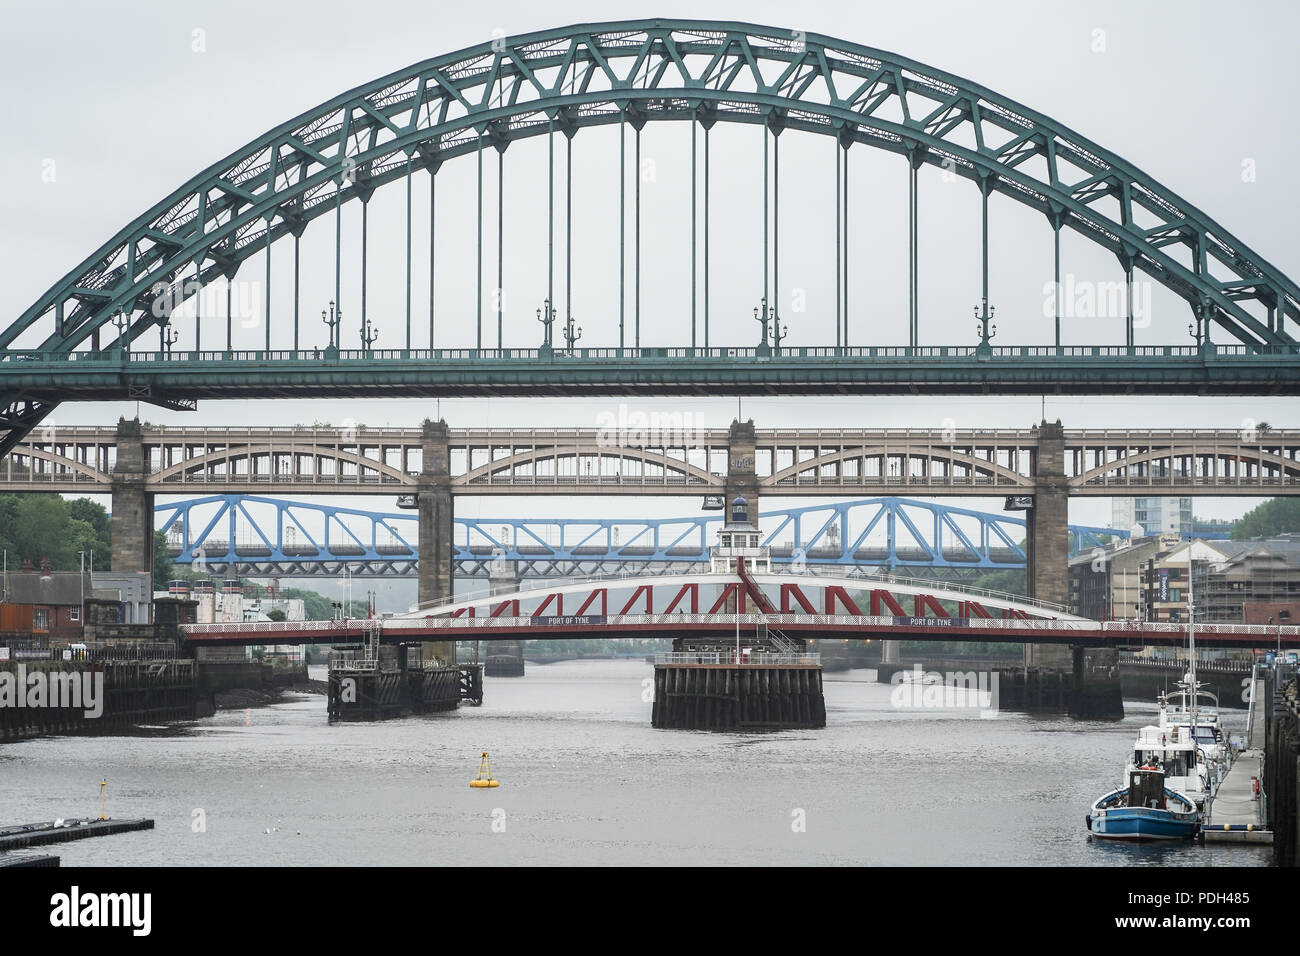 Une vue sur le Tyne Bridge et d'autres ponts sur la rivière Tyne dans la ville de Newcastle, Royaume-Uni. Date de la photo : le lundi 11 juin 2018. Photo : Roger Garfield Banque D'Images